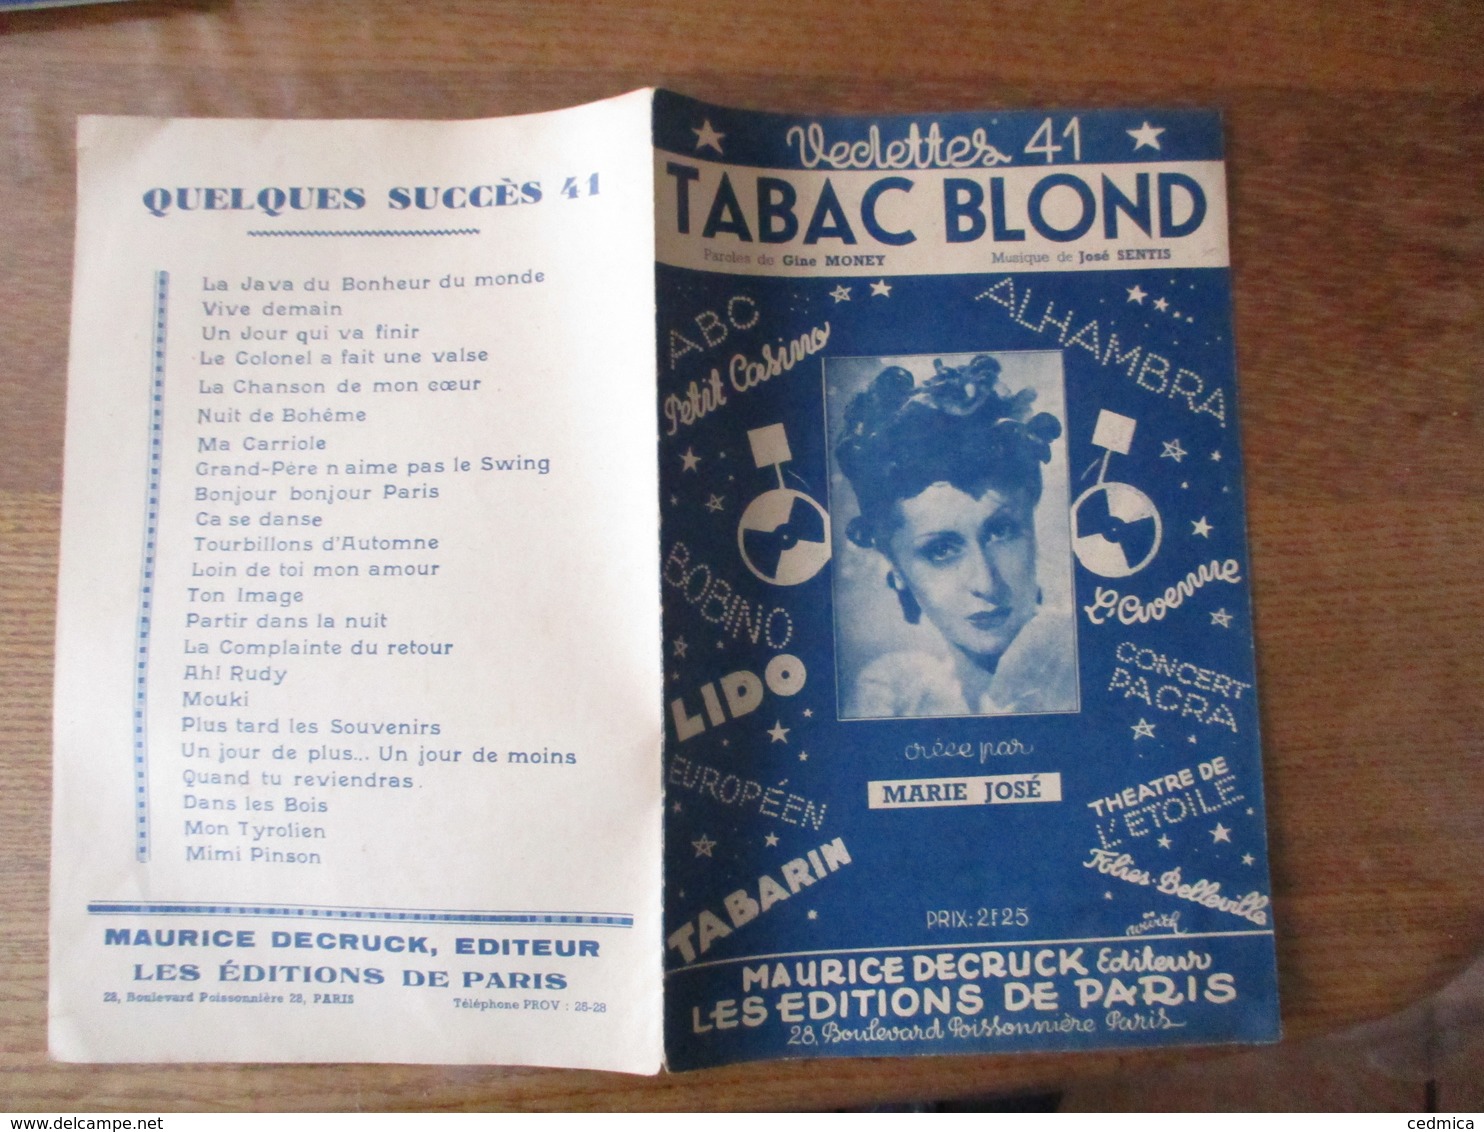 TABAC BLOND CREEE PAR MARIE JOSE PAROLES DE GINE MONEY MUSIQUE DE JOSE SENTIS - Scores & Partitions